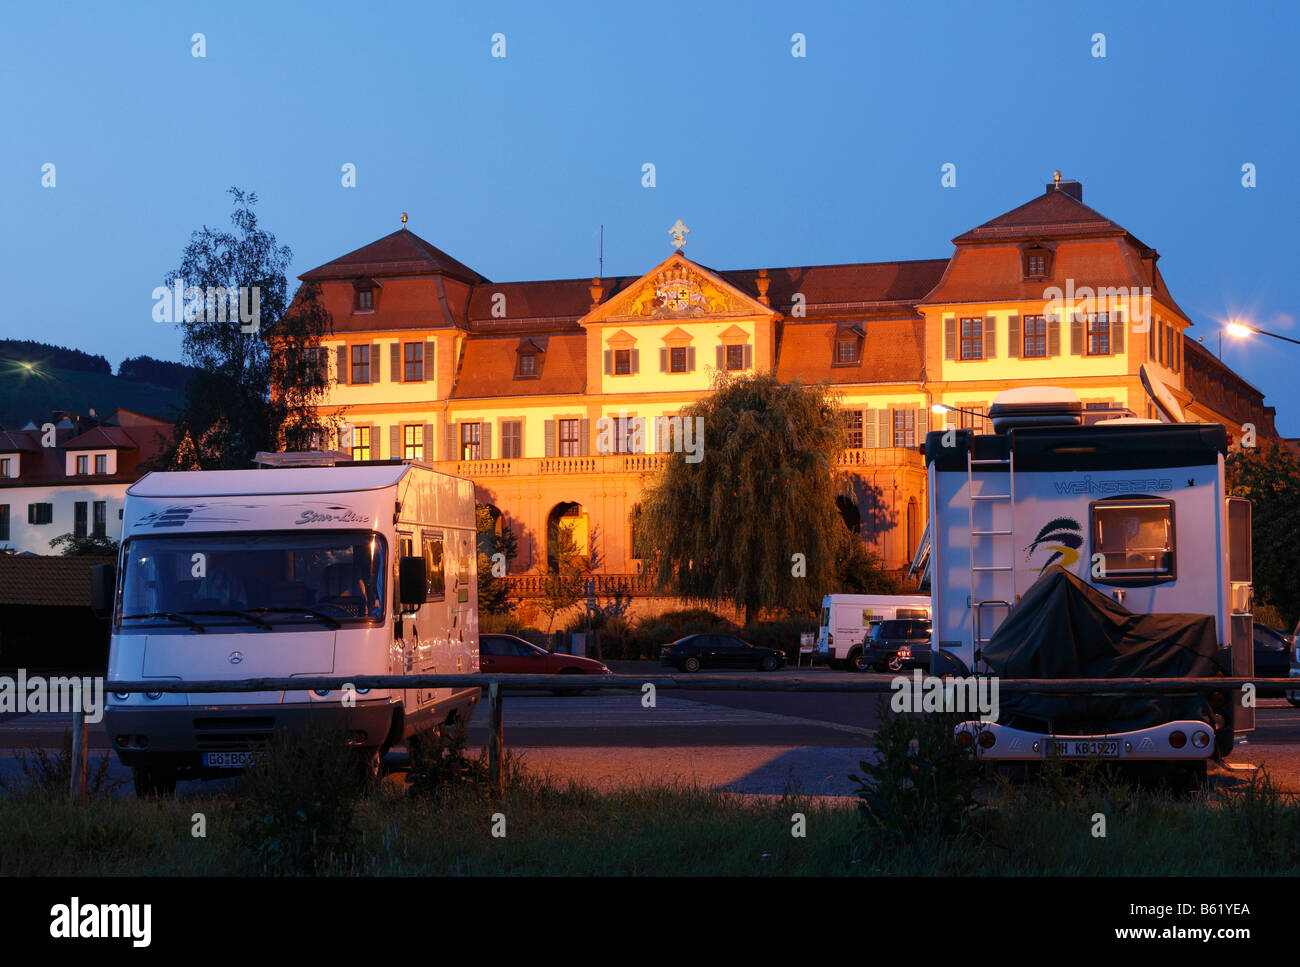 Case mobili parcheggiato di fronte alla Kellereischloss illuminato, Palazzo Rosso, a Hammelburg, Rhoen, bassa Franconia, Baviera, Germa Foto Stock